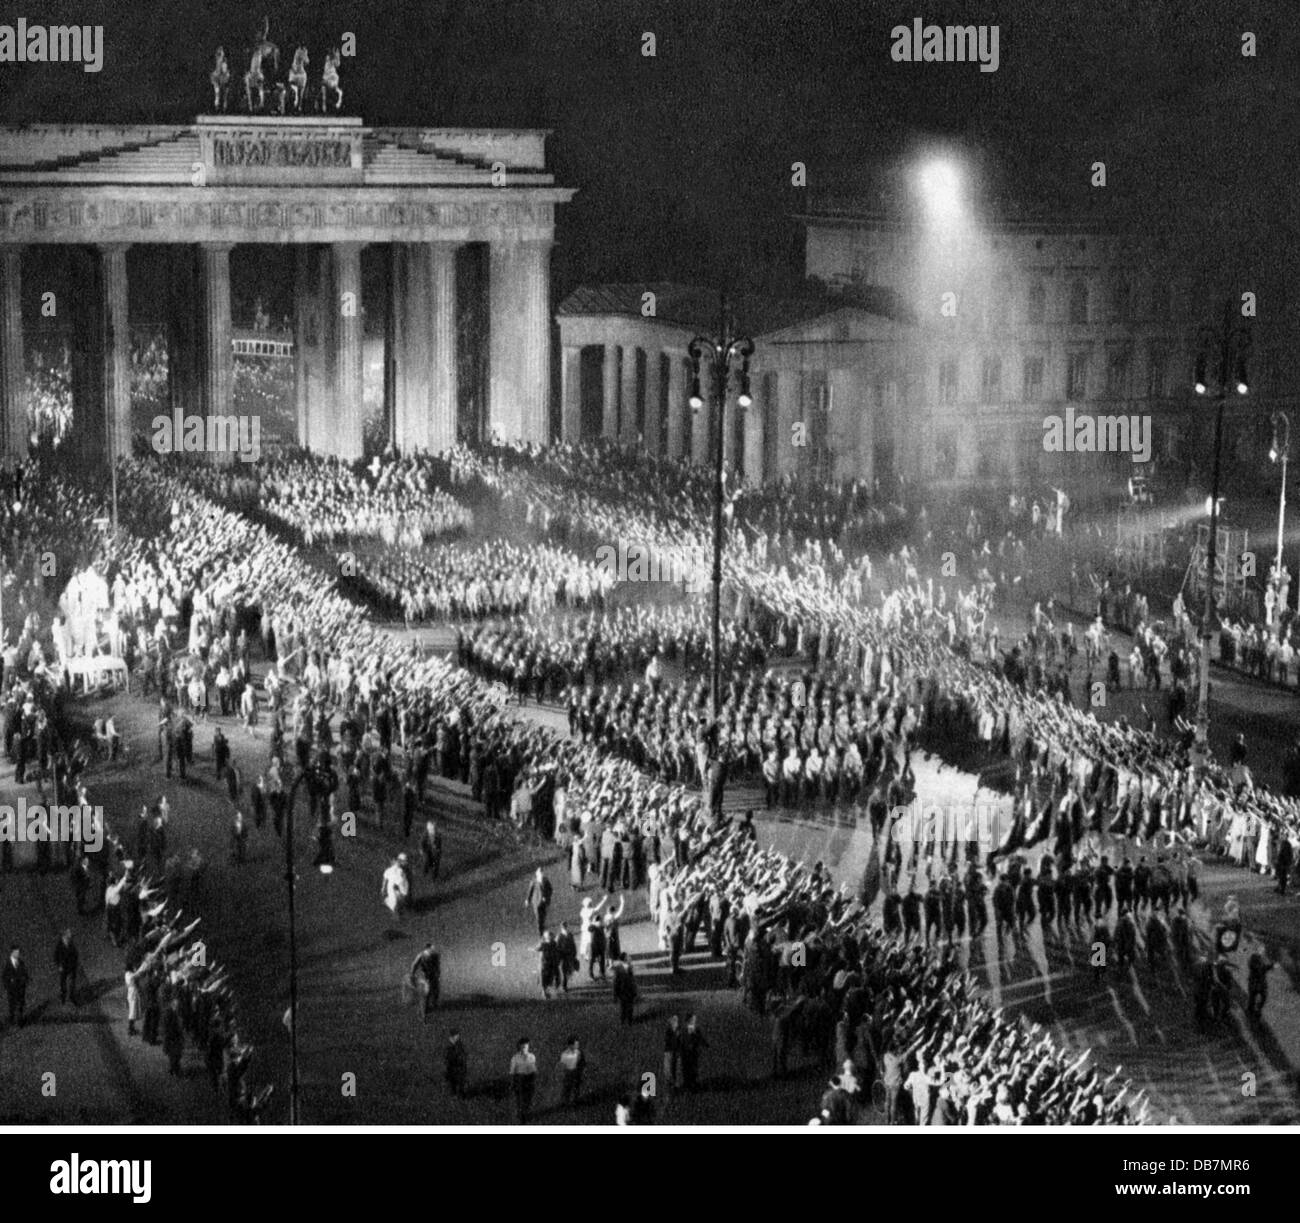 Приход фашистов в германии. Факельное шествие в Берлине 1933. Бранденбургские ворота 3 Рейх. Факельное шествие 1933 третьего рейха. Факельные шествия в Германии 1933.